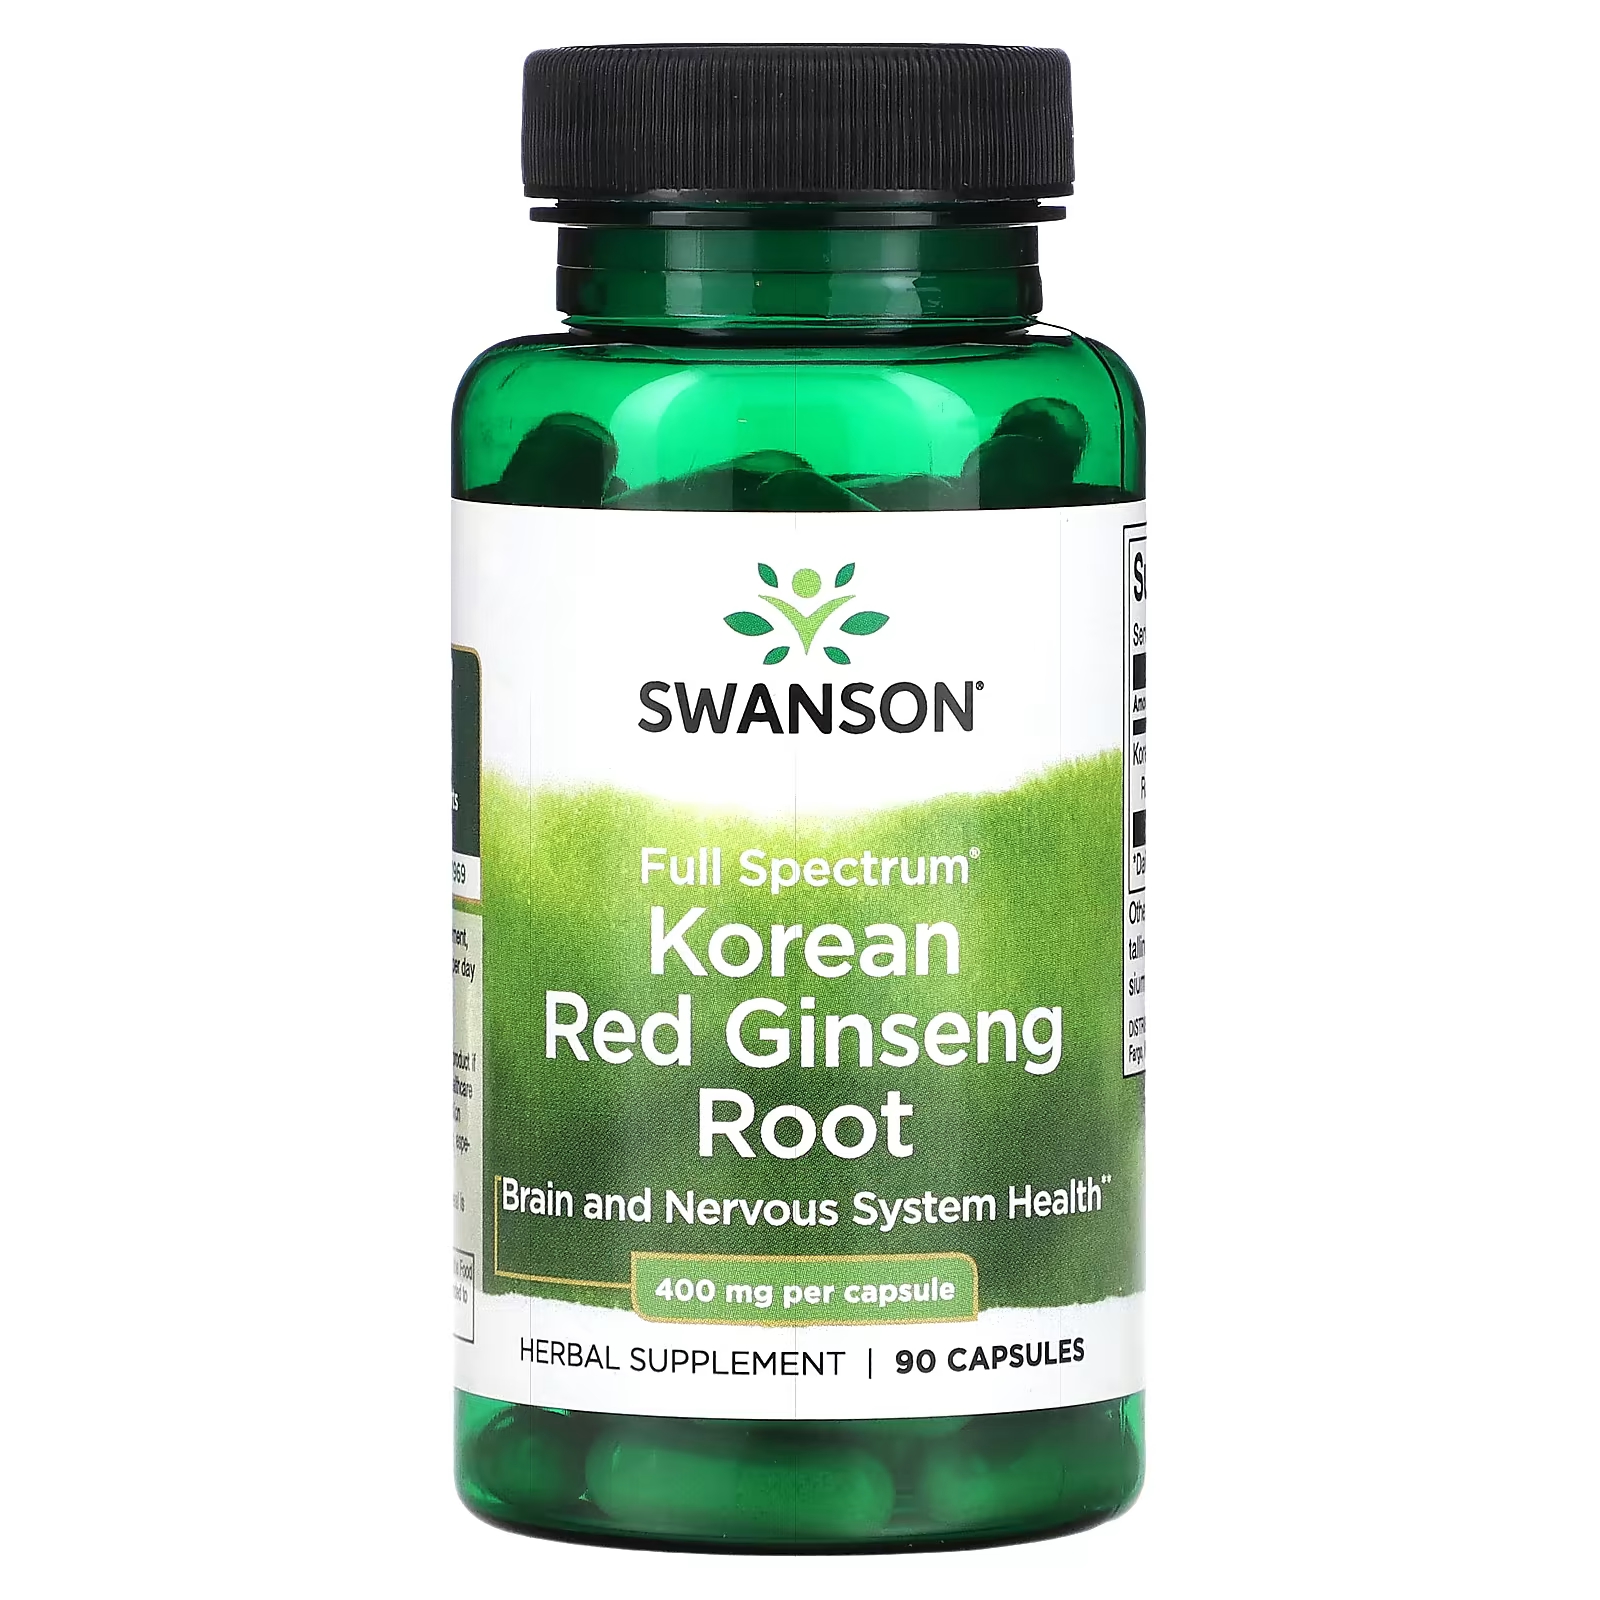 федунина н ю здоровье нервной системы Корейский красный женьшень Swanson Full Spectrum 400 мг, 90 капсул